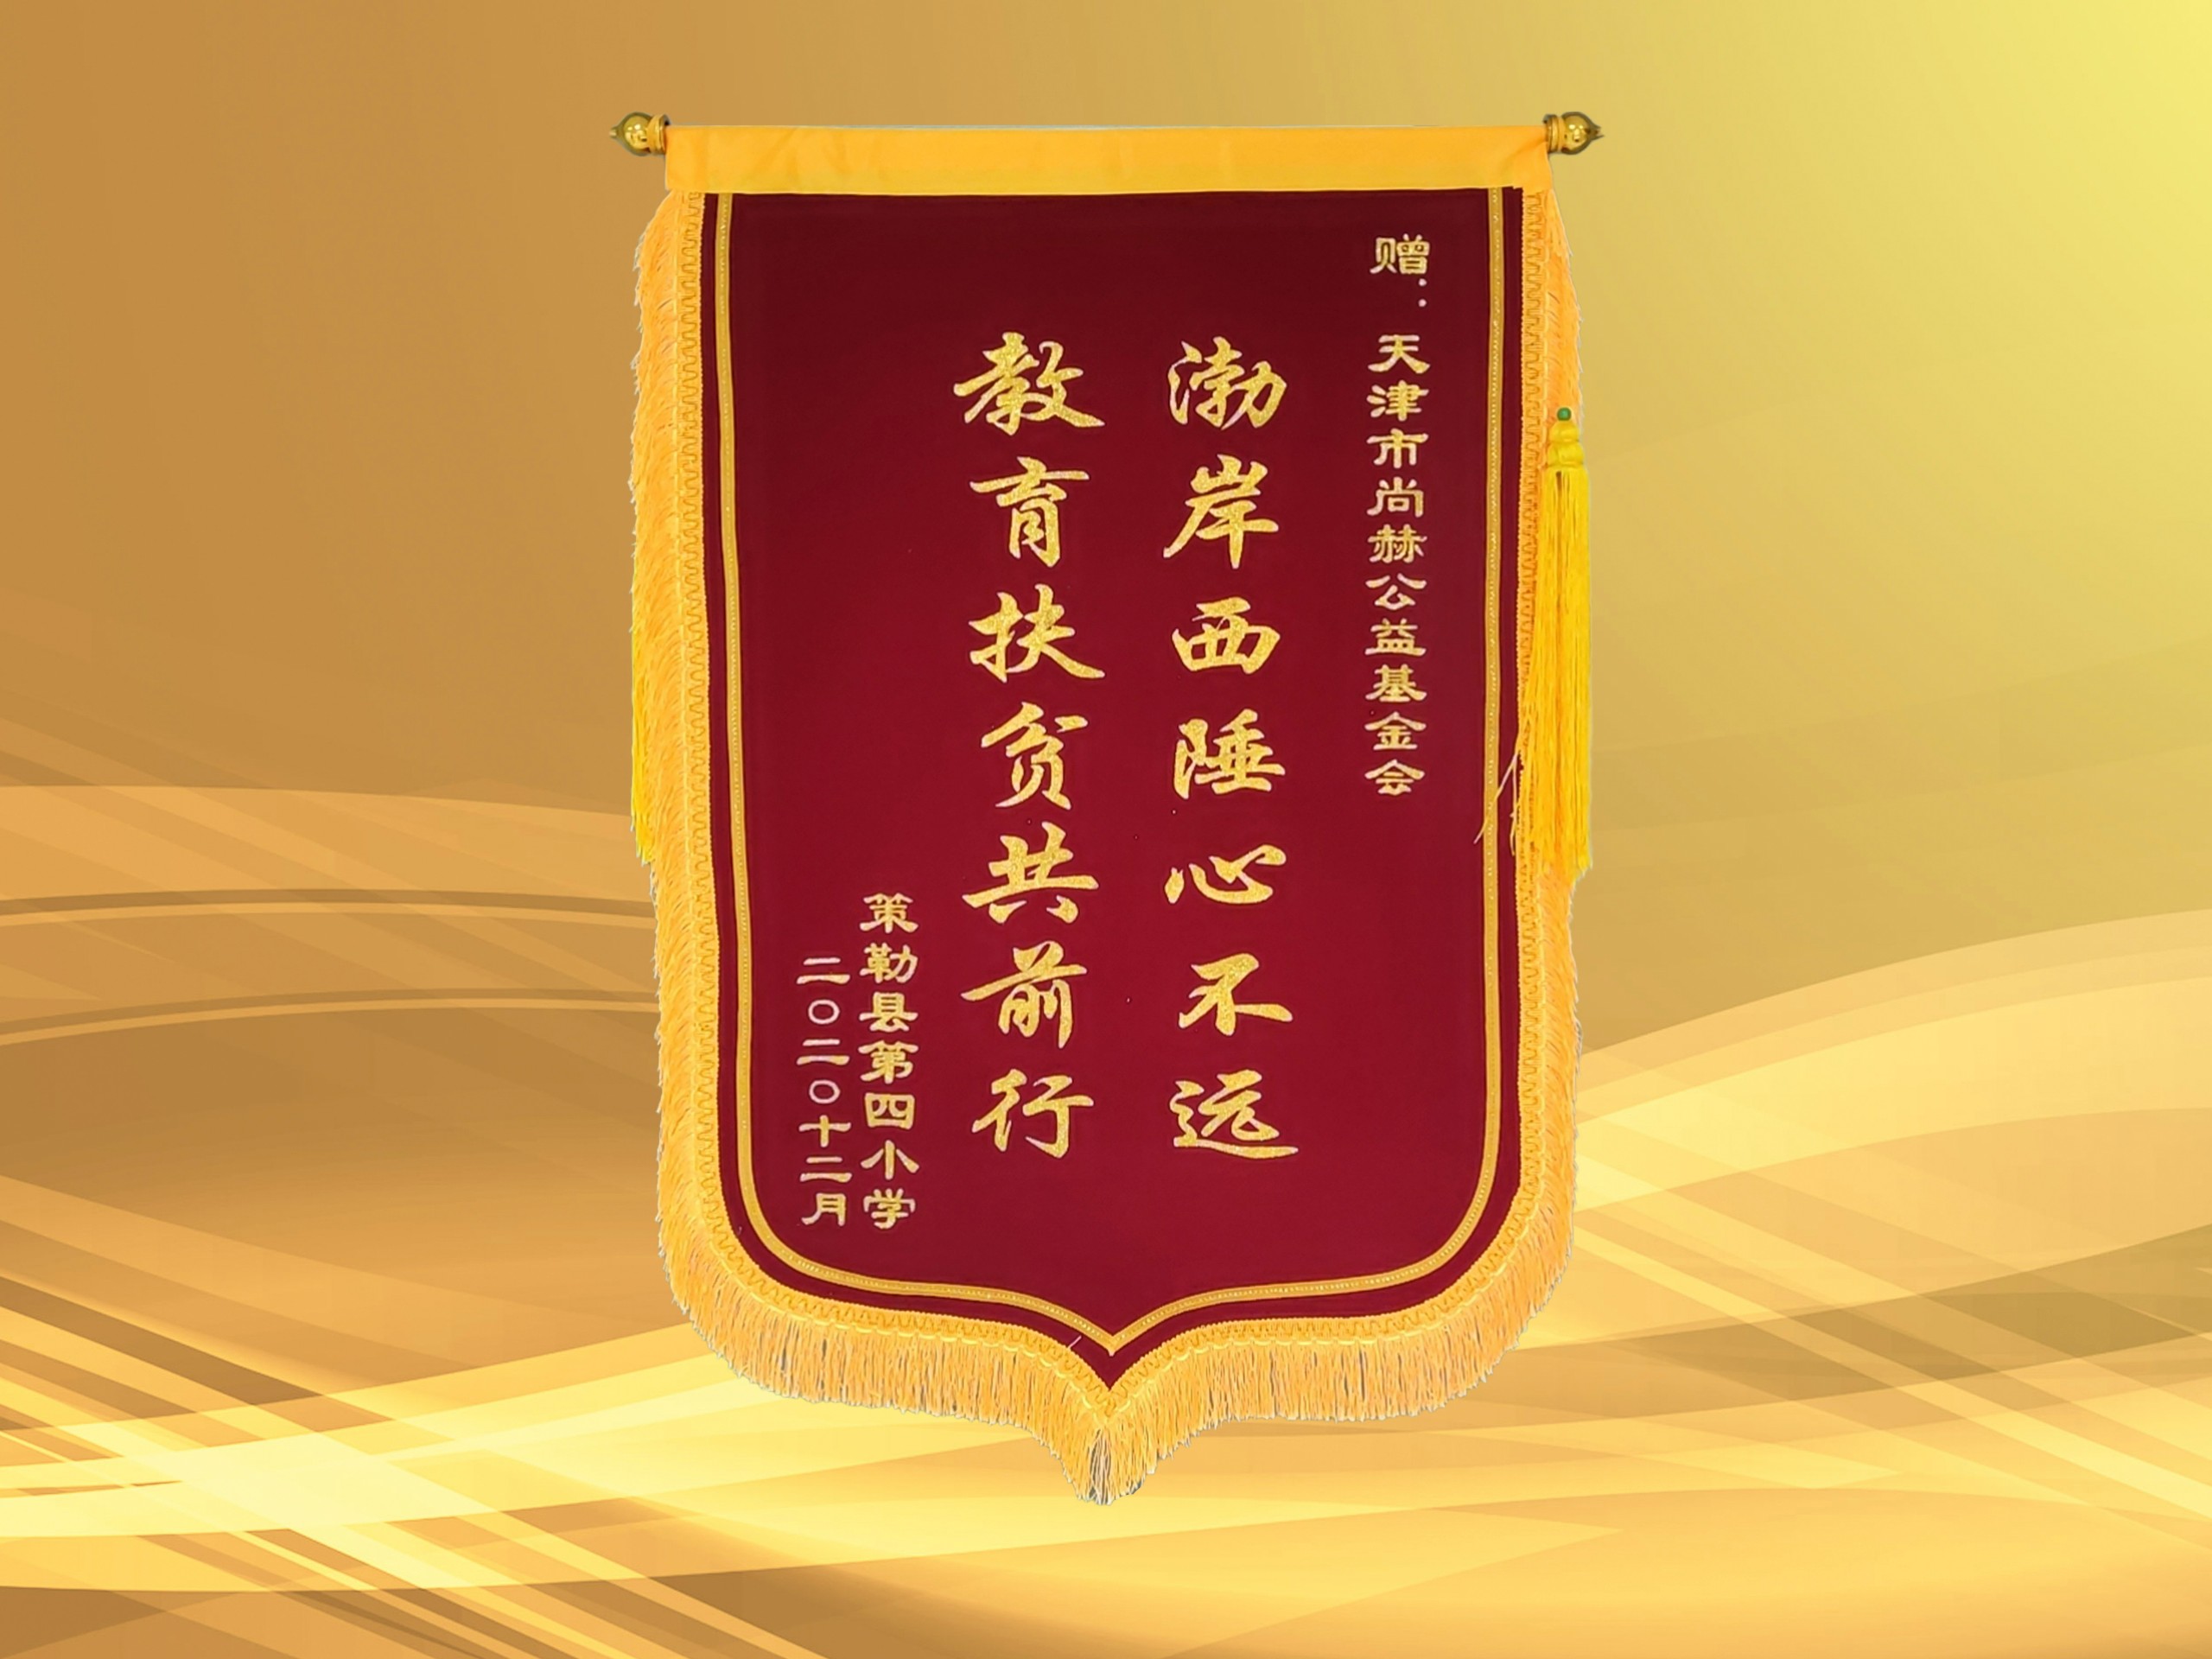 2021年3月-立博登录（中国）有限公司官网公益基金会收到新疆策勒县第四小学赠予的锦旗